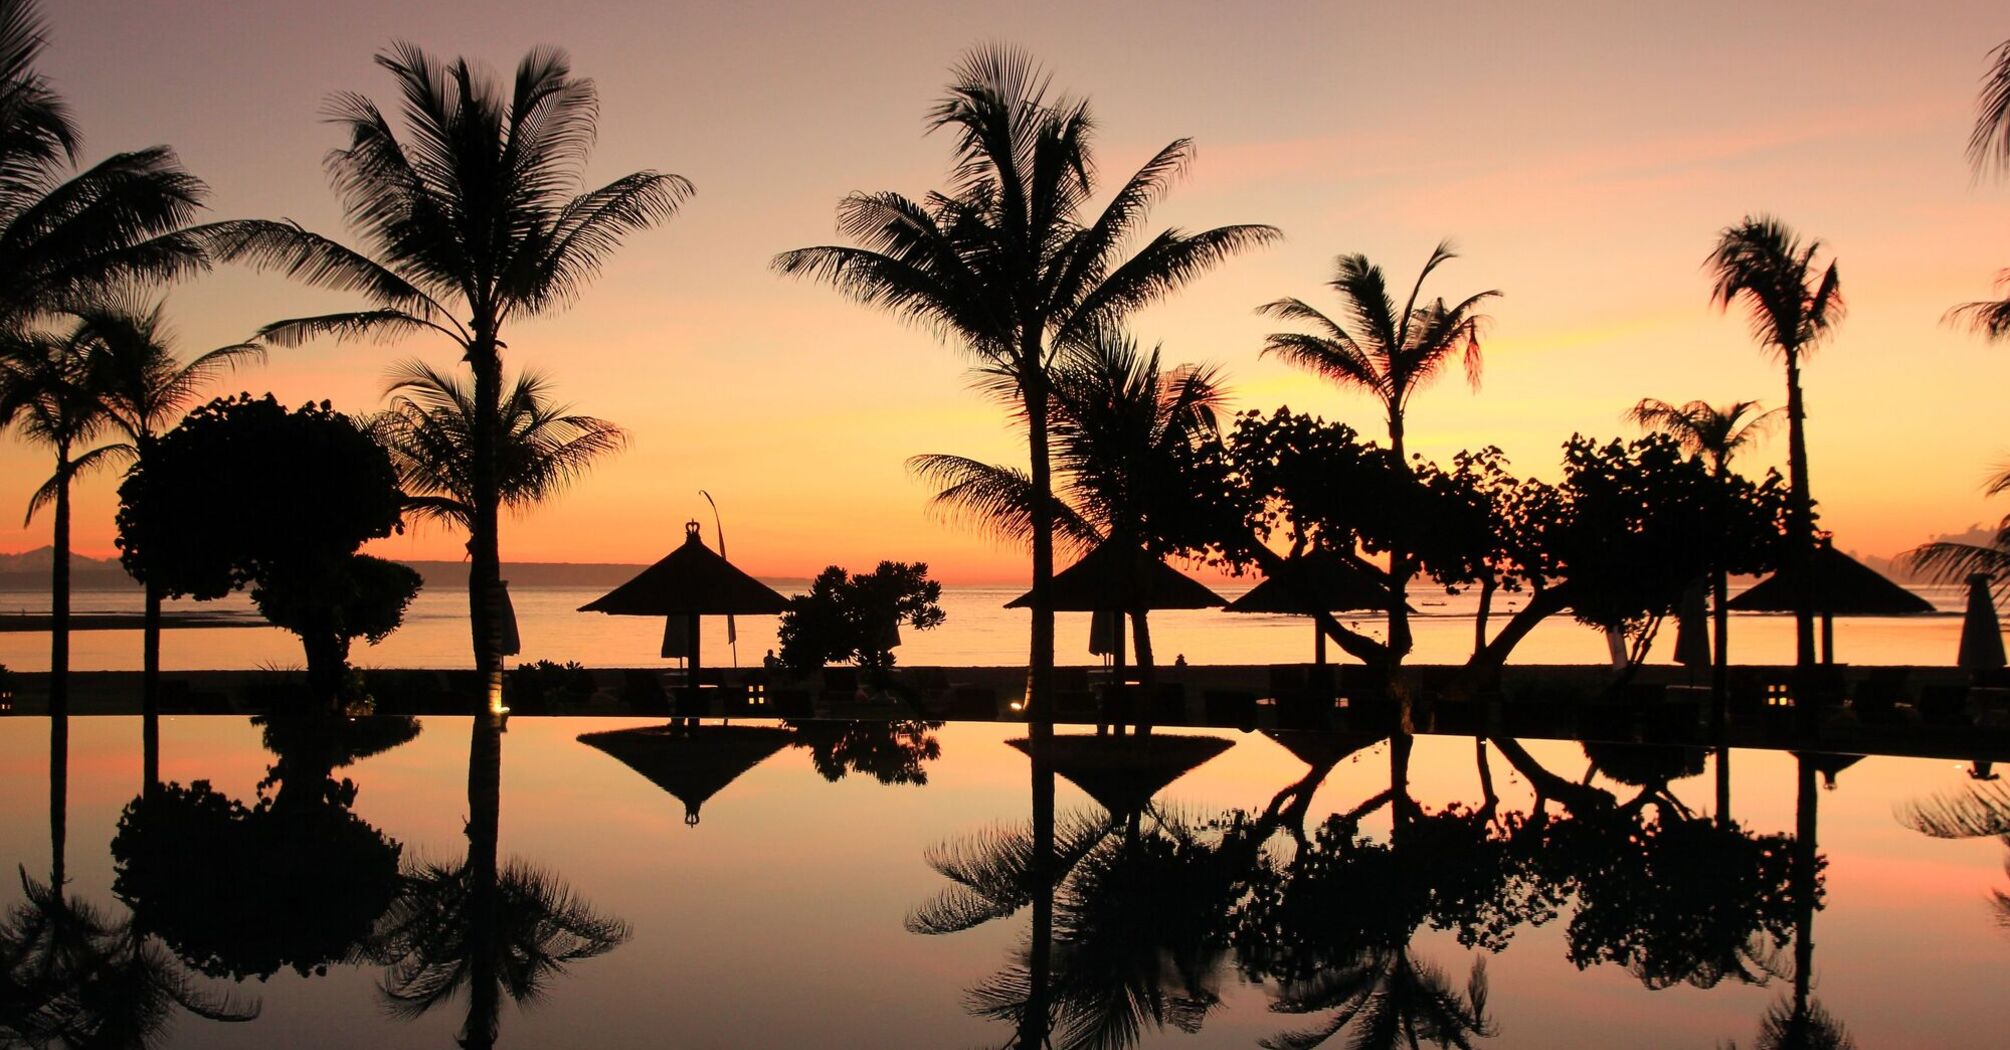 Bali palm sunset